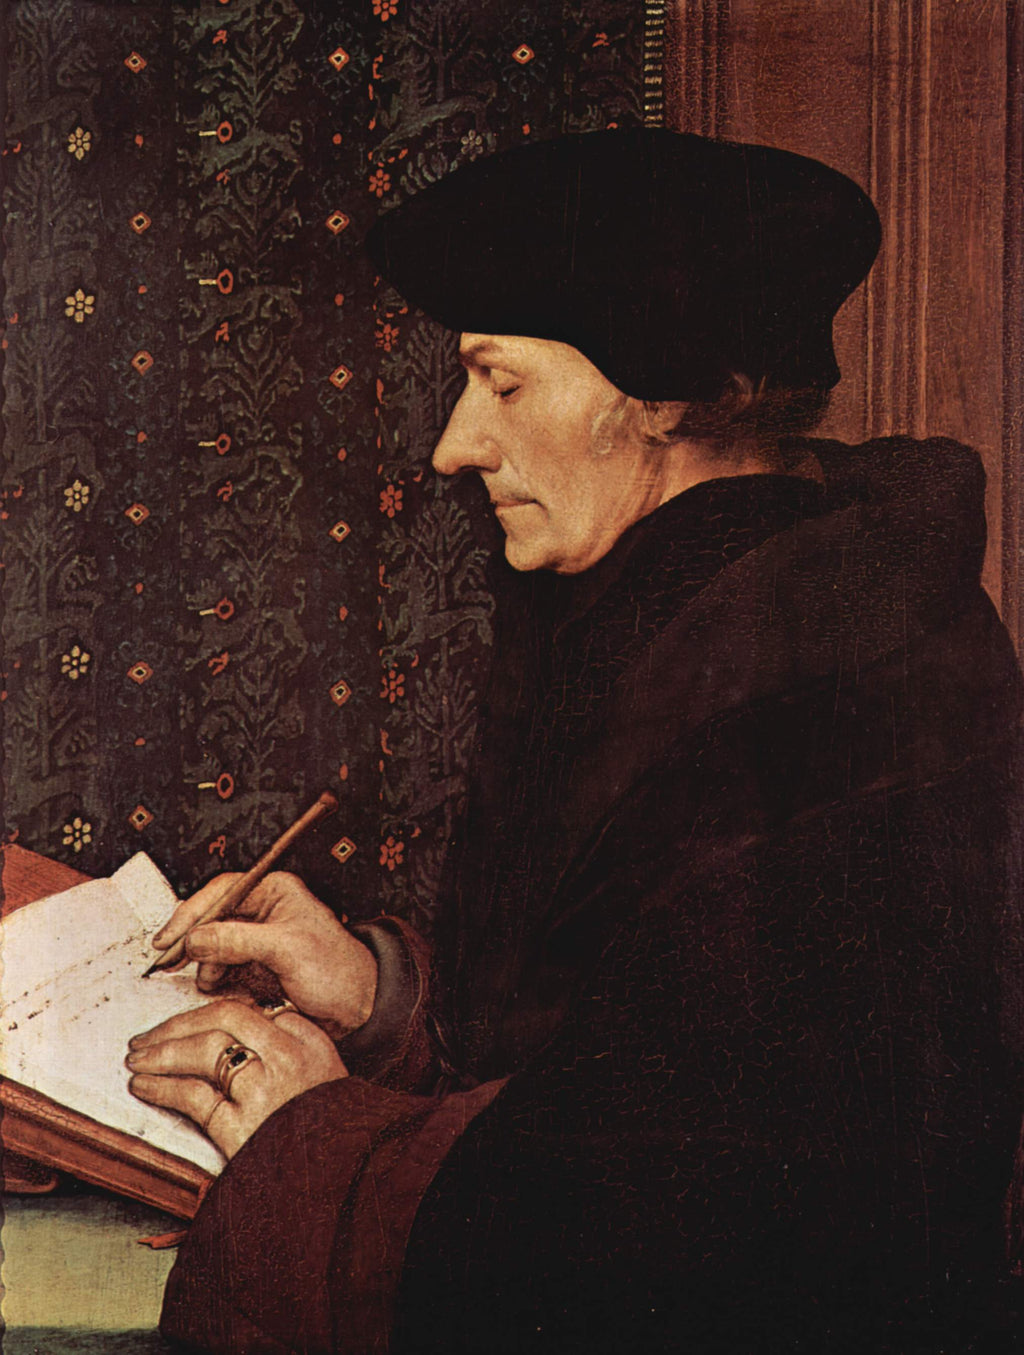 Retrato de Desiderius Erasmus